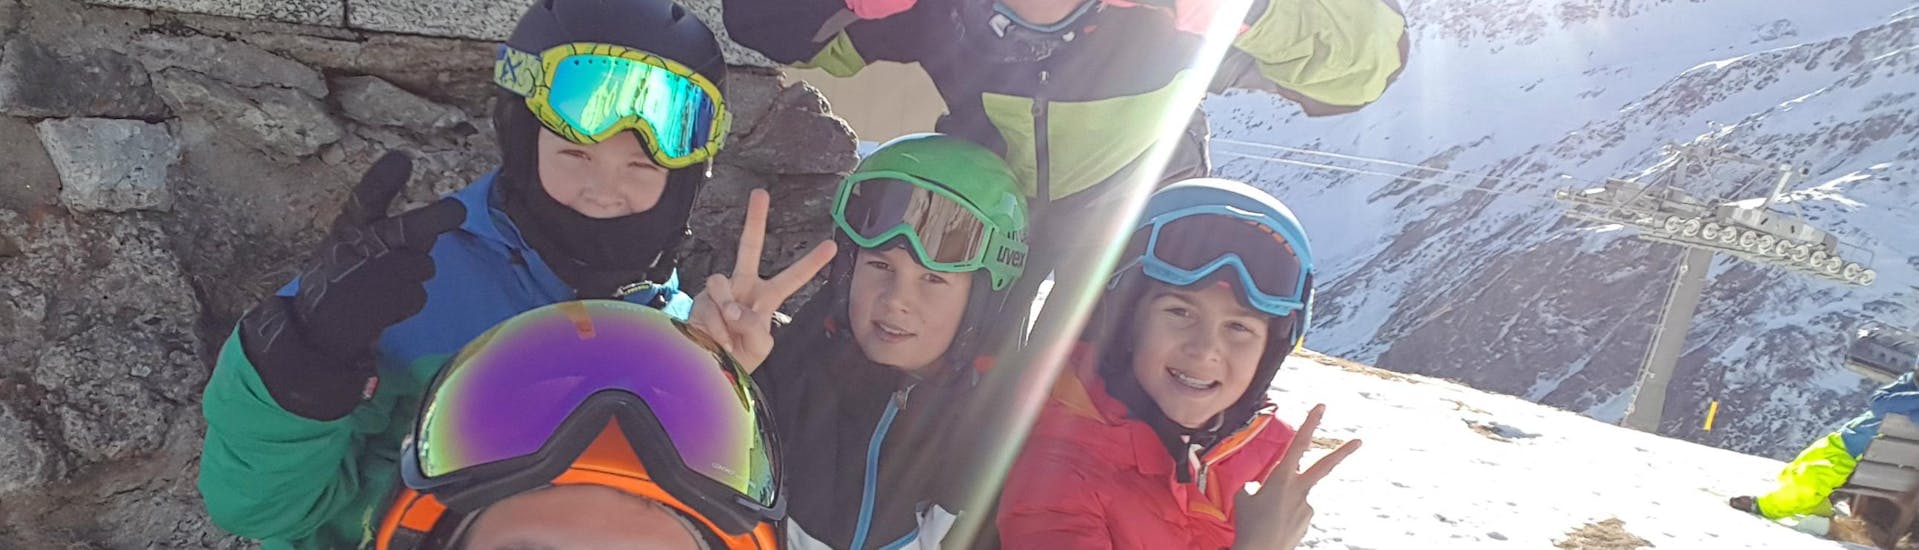 Lezioni di sci per bambini a partire da 7 anni con esperienza.